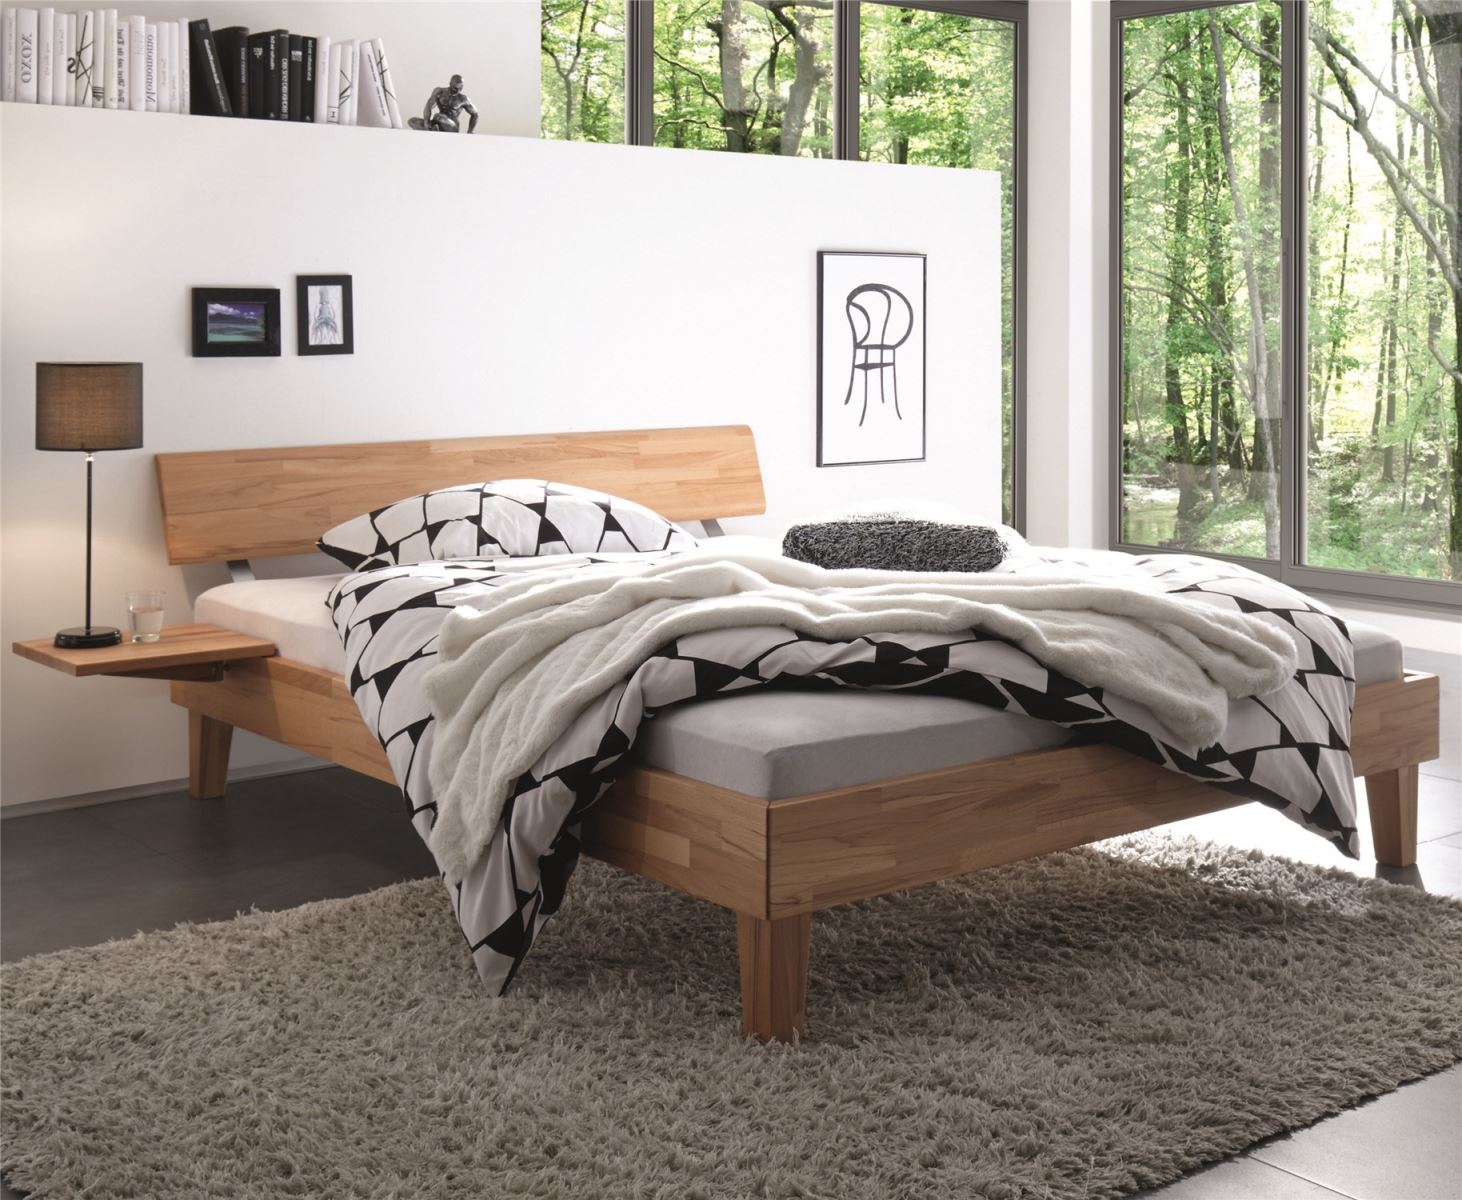 Những thiết kế giường ngủ hiện đại TpHCM mà bạn không thể bỏ qua